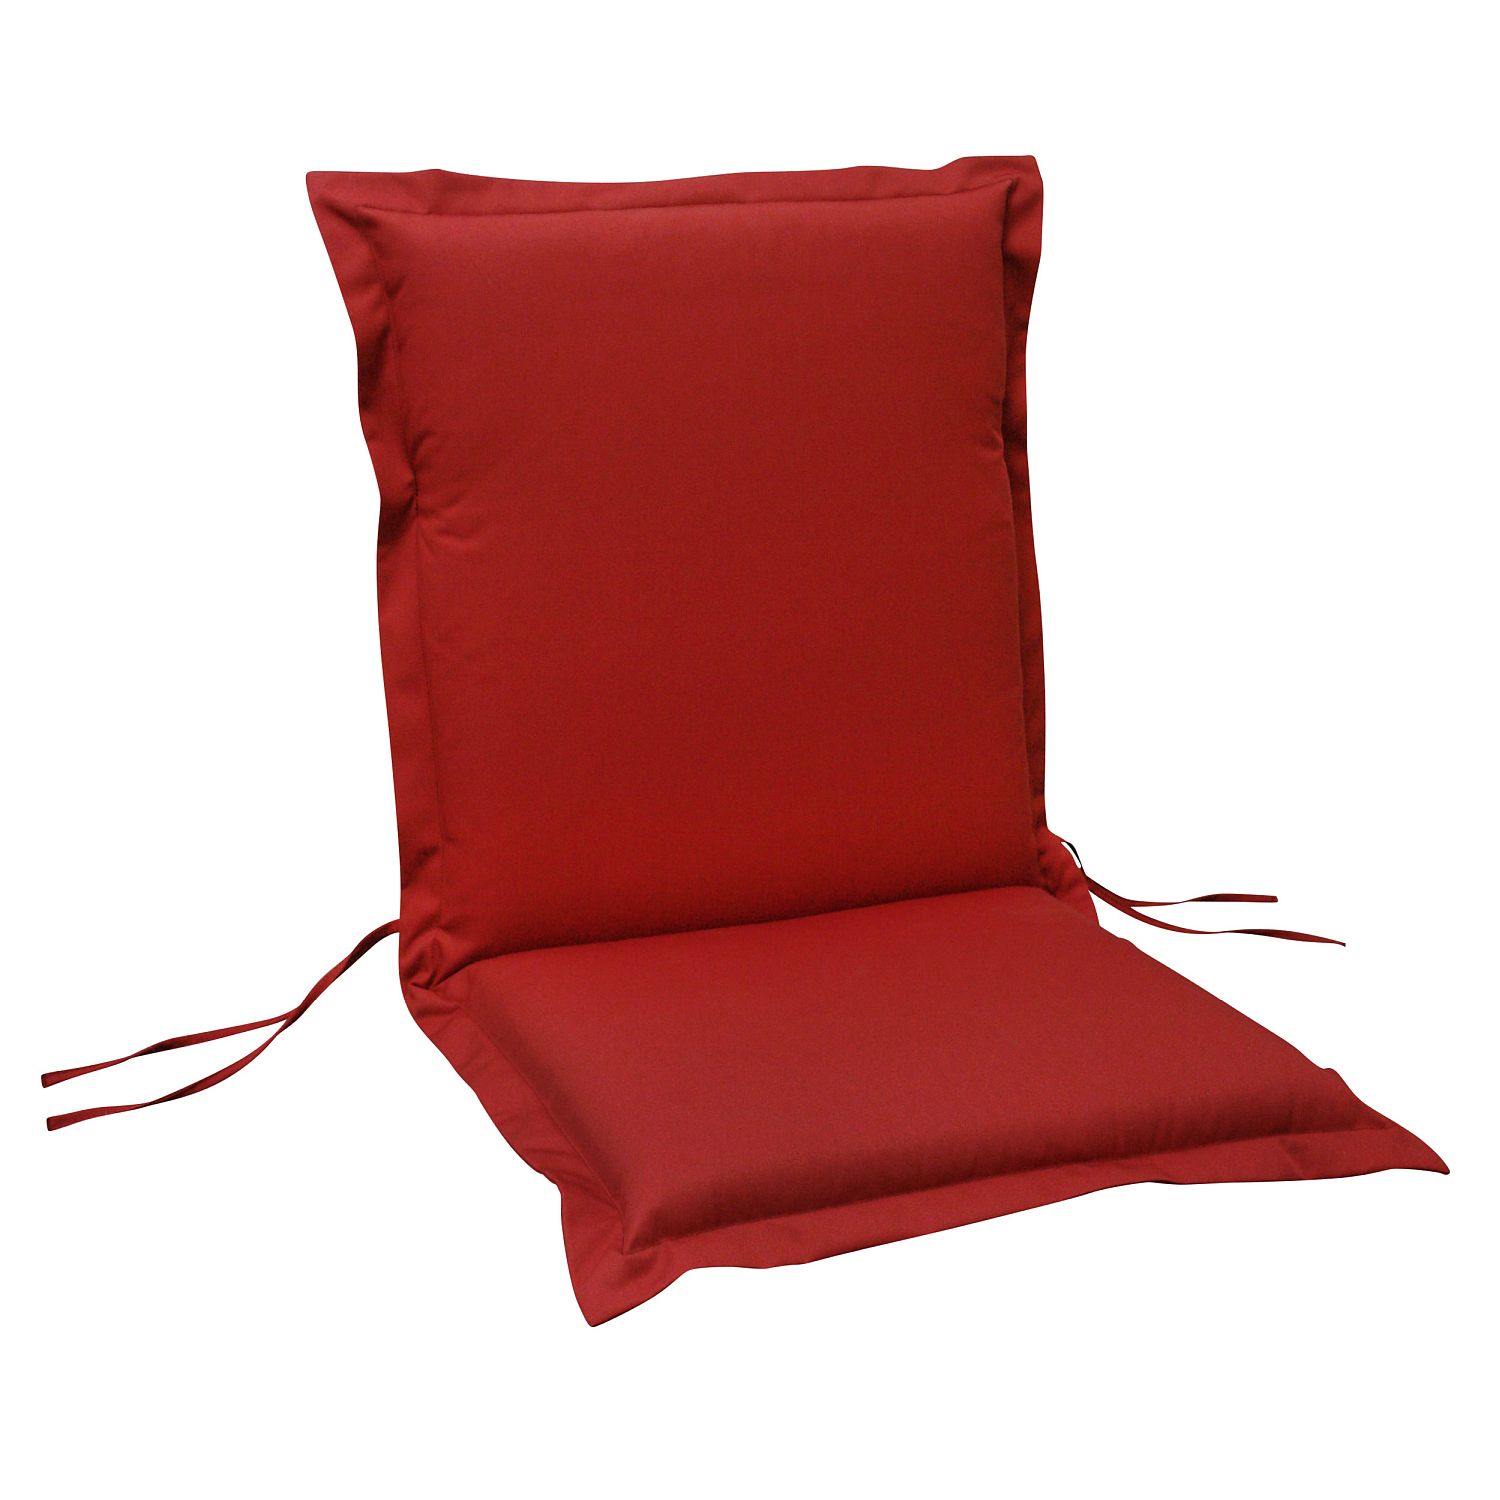 Sitzauflage Niederlehner indoba Premium | extra dick | Rot |2 Stück